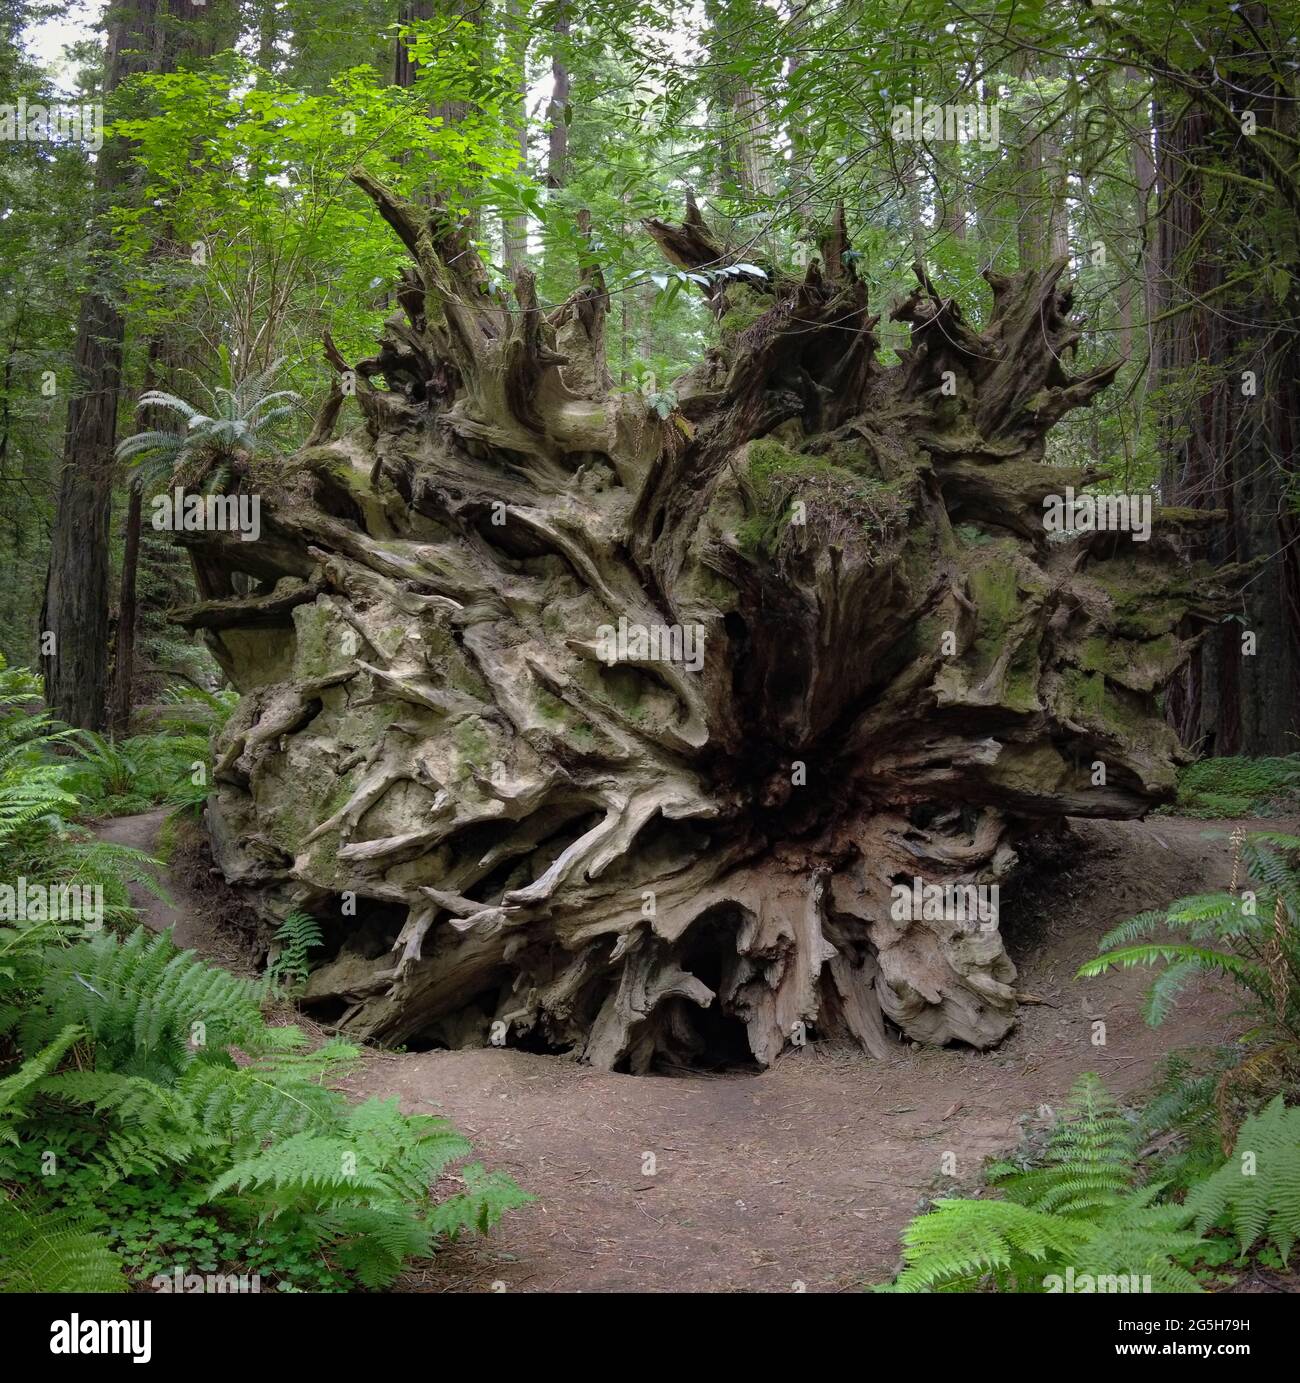 Un enorme albero di sequoie costiere, Sequoia sempervirens, è caduto in mezzo ad altri alberi giganti in Humboldt Redwoods state Park, California del Nord. Foto Stock